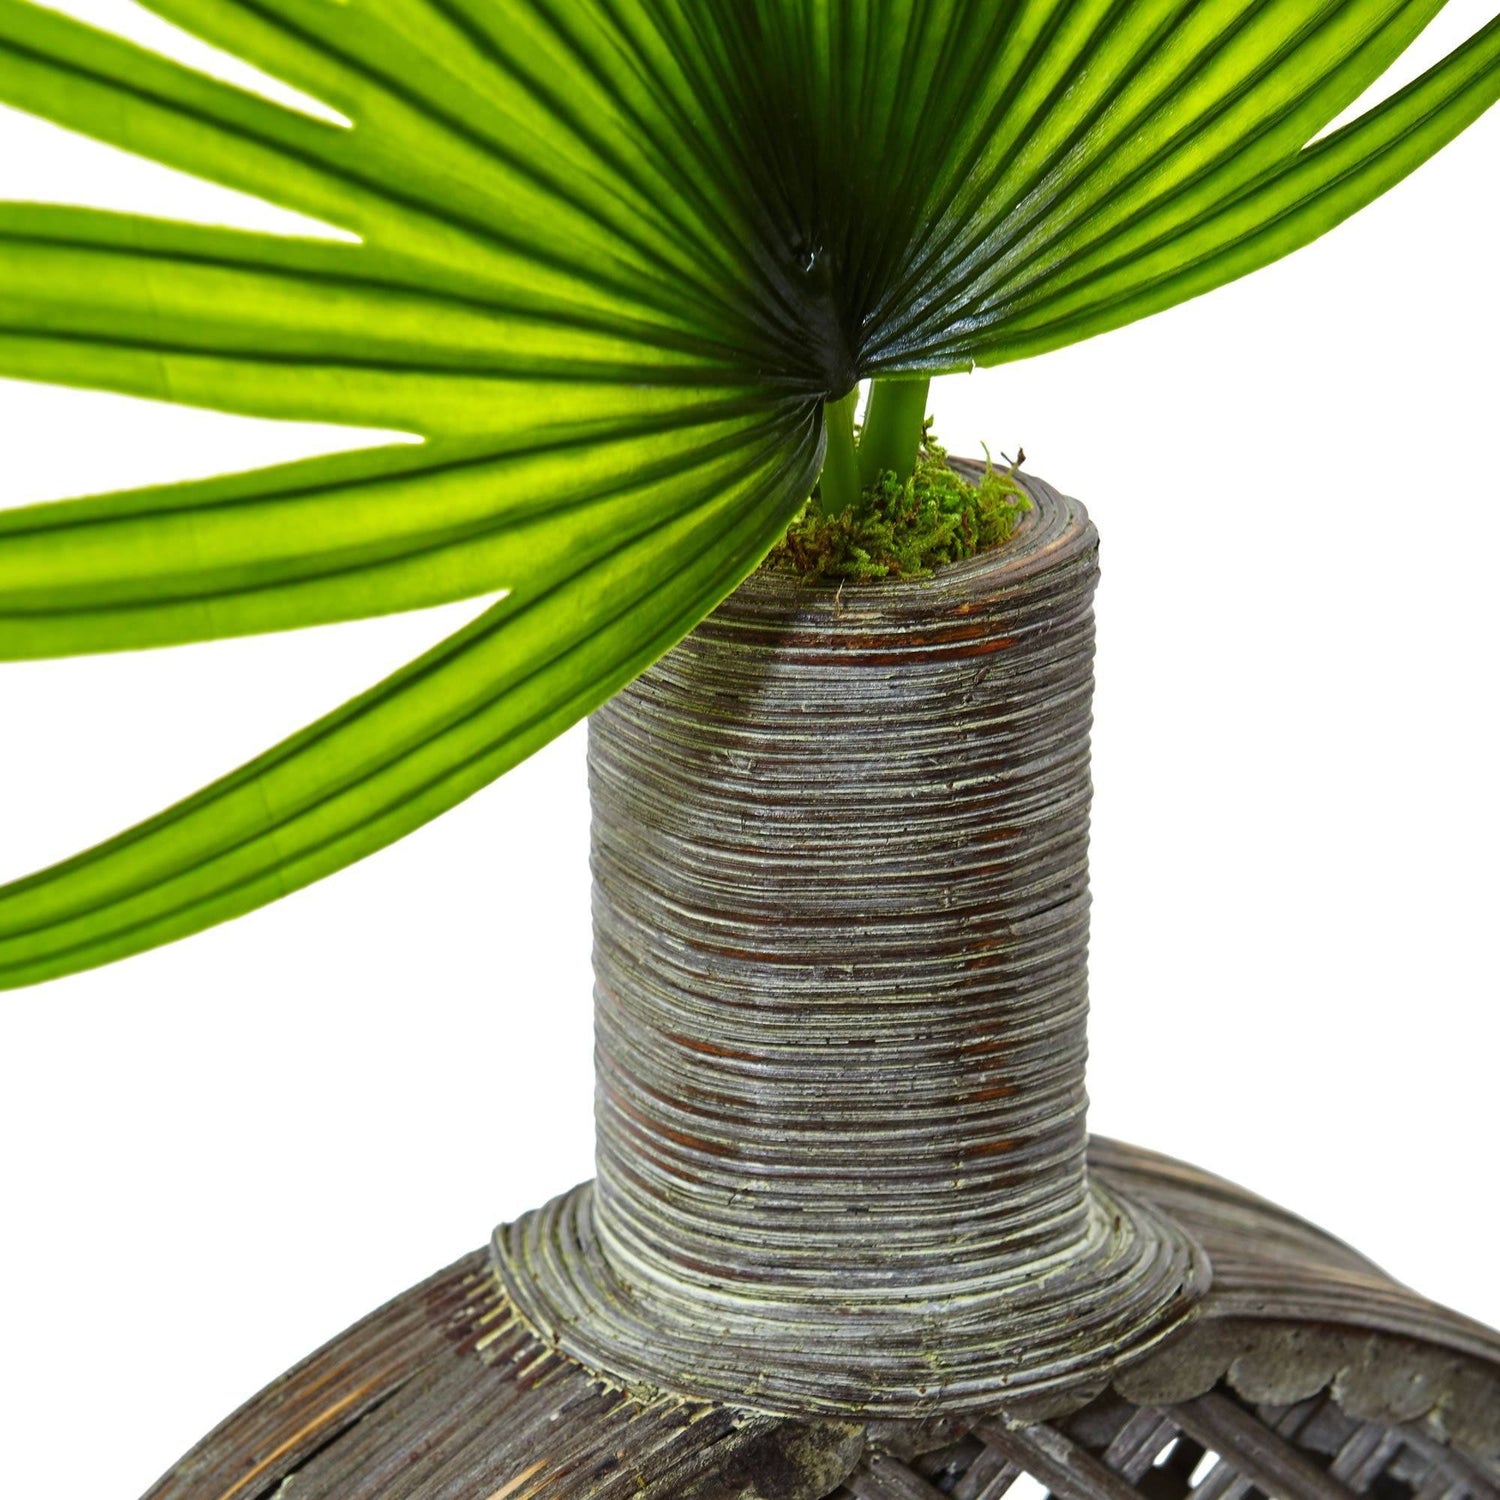 Fan Palm in Open Weave Vase